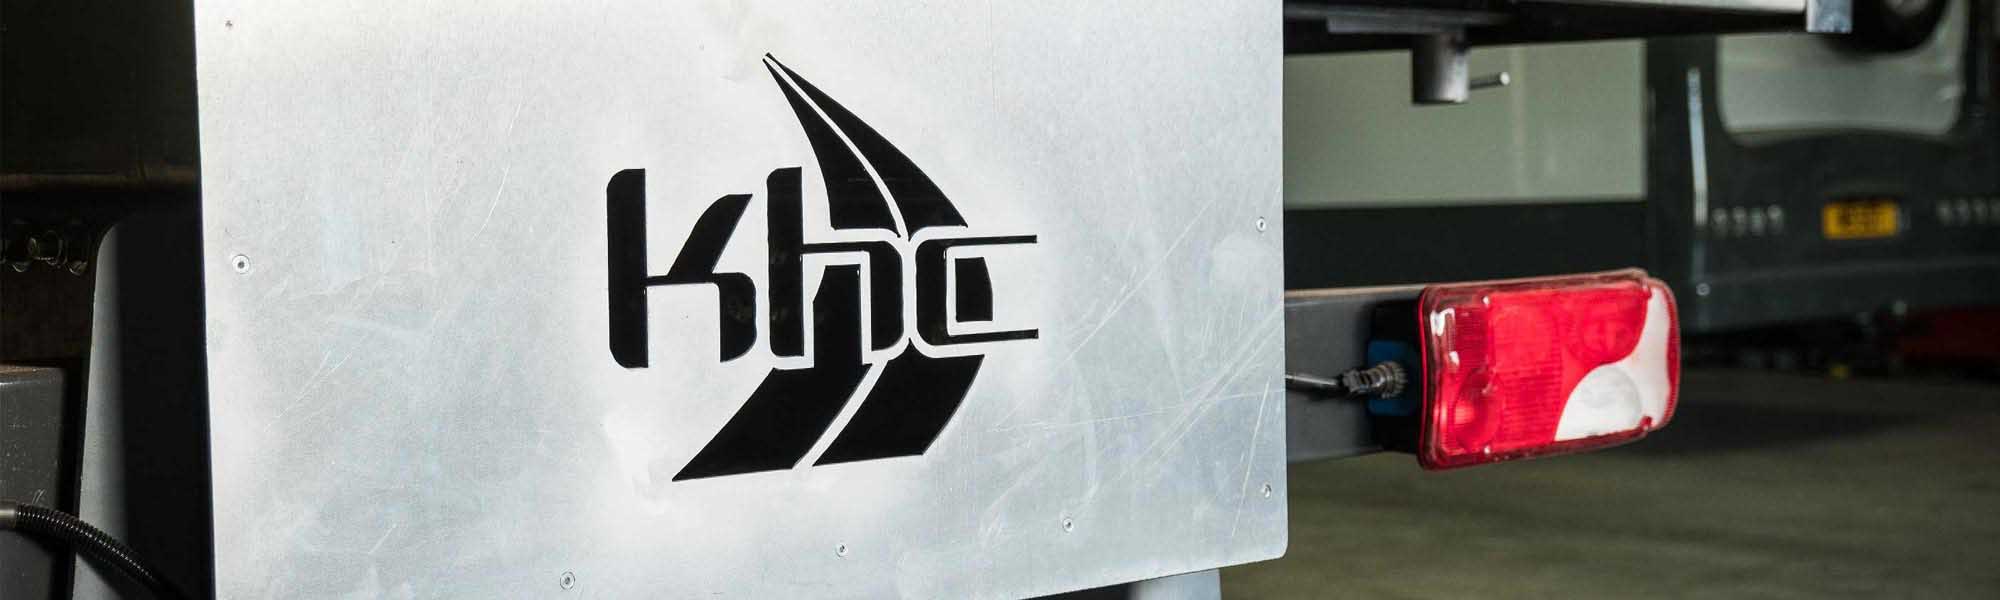 KHC Stencil.jpg